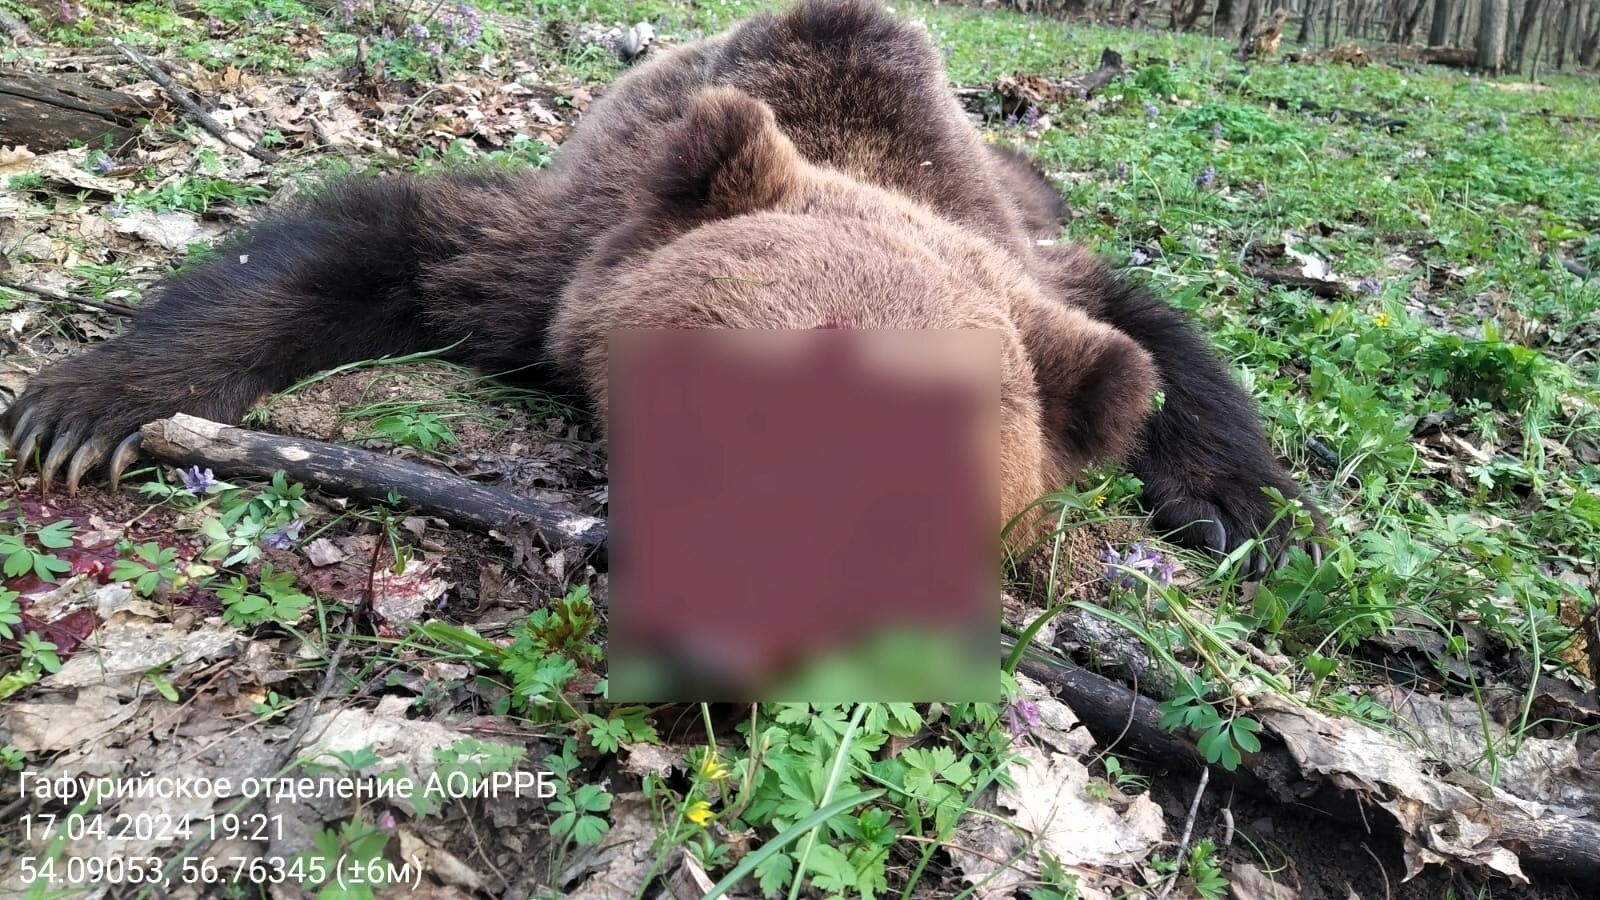 Тревога в Каран-Елге: медведь-нарушитель потревожил покой местных жителей, накинувшись на КРС